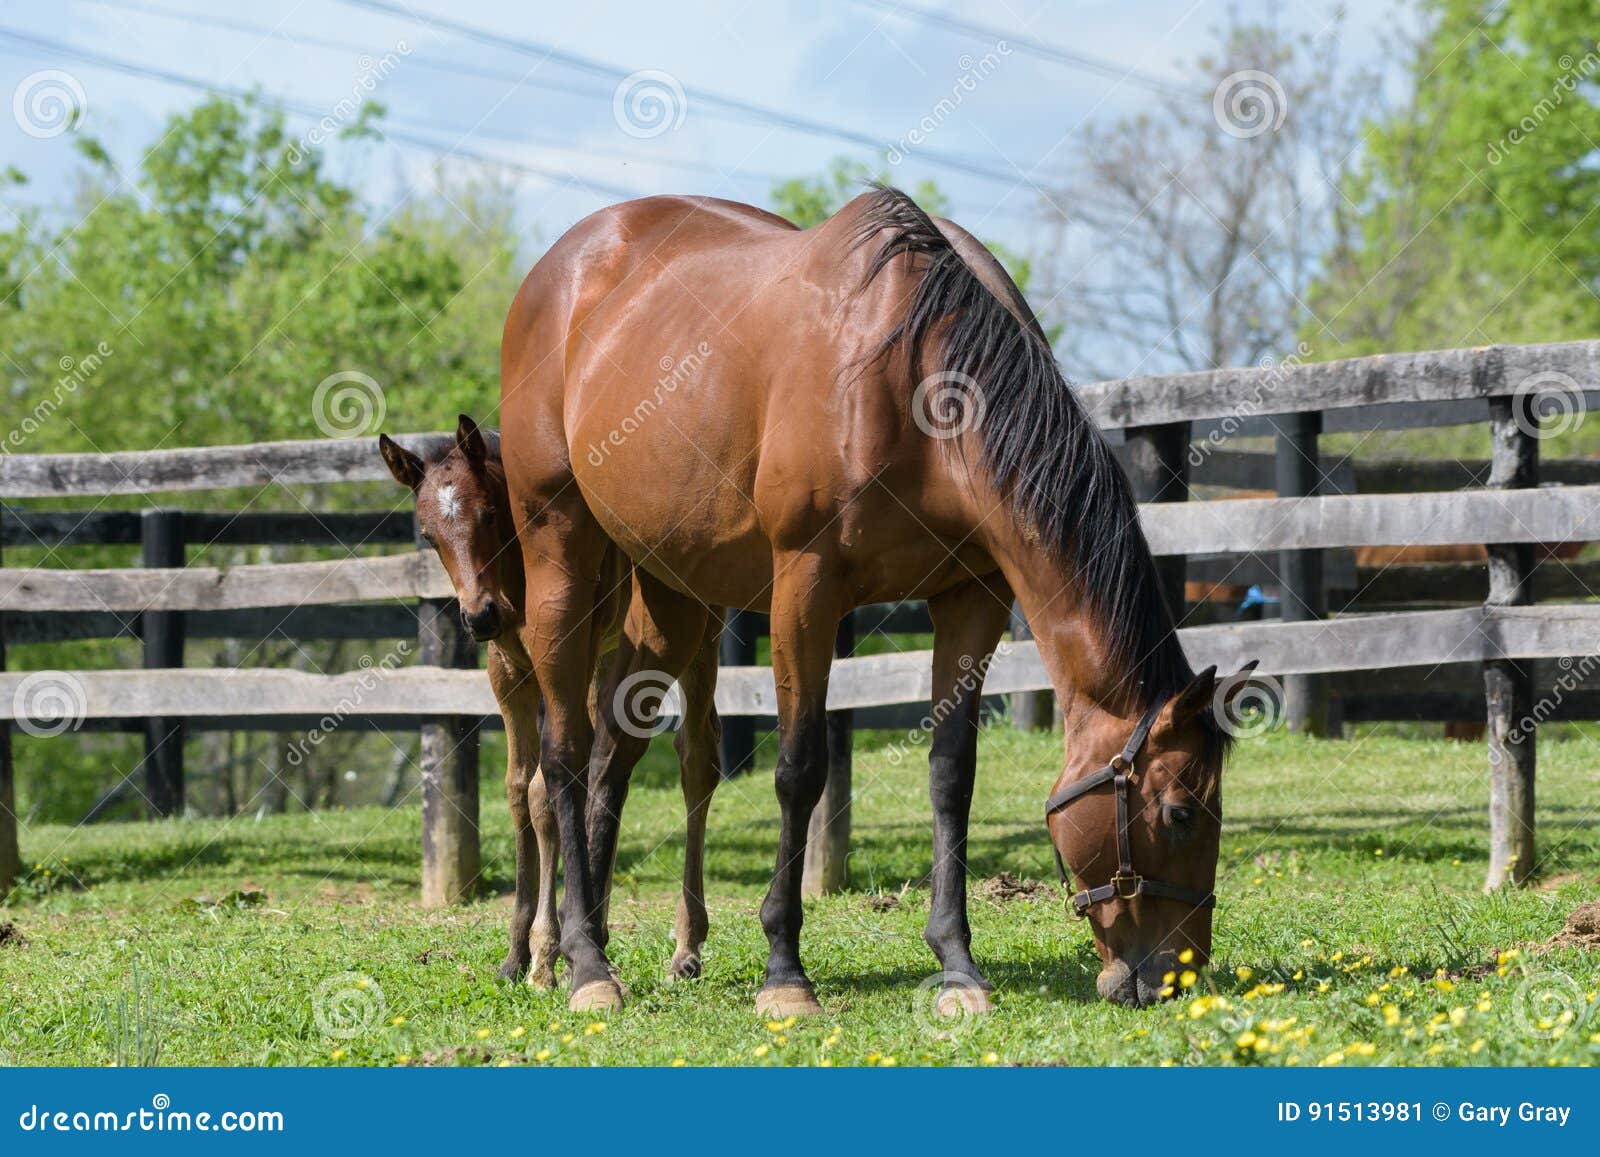 kentucky thoroughbred horse in bluegrass field